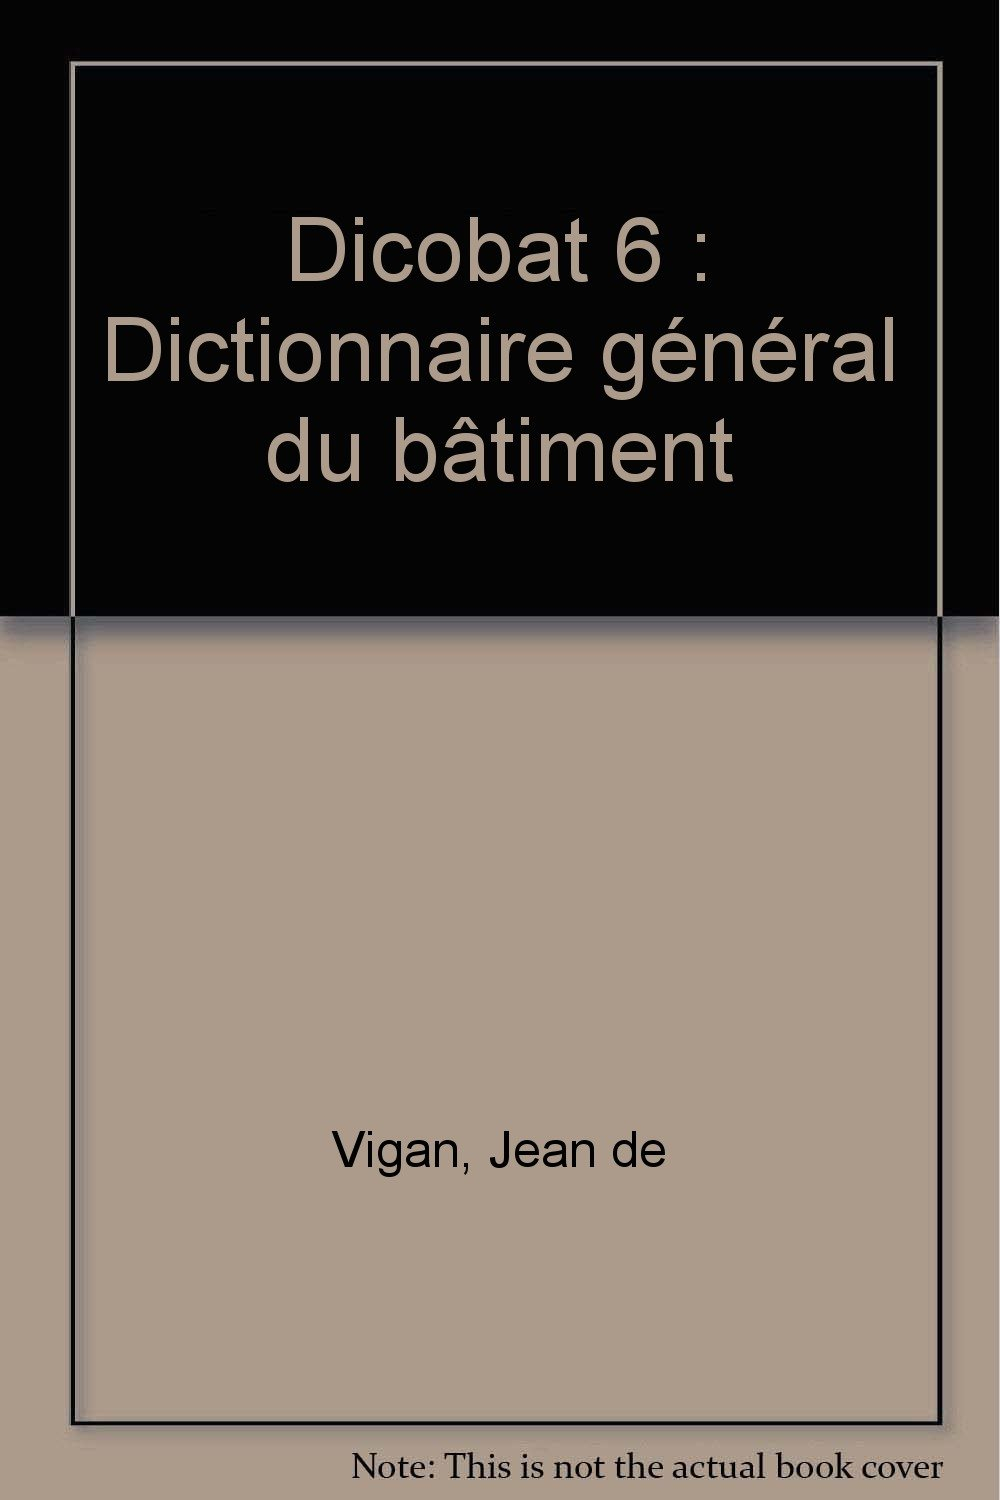 Dicobat 6 : dictionnaire général du bâtiment